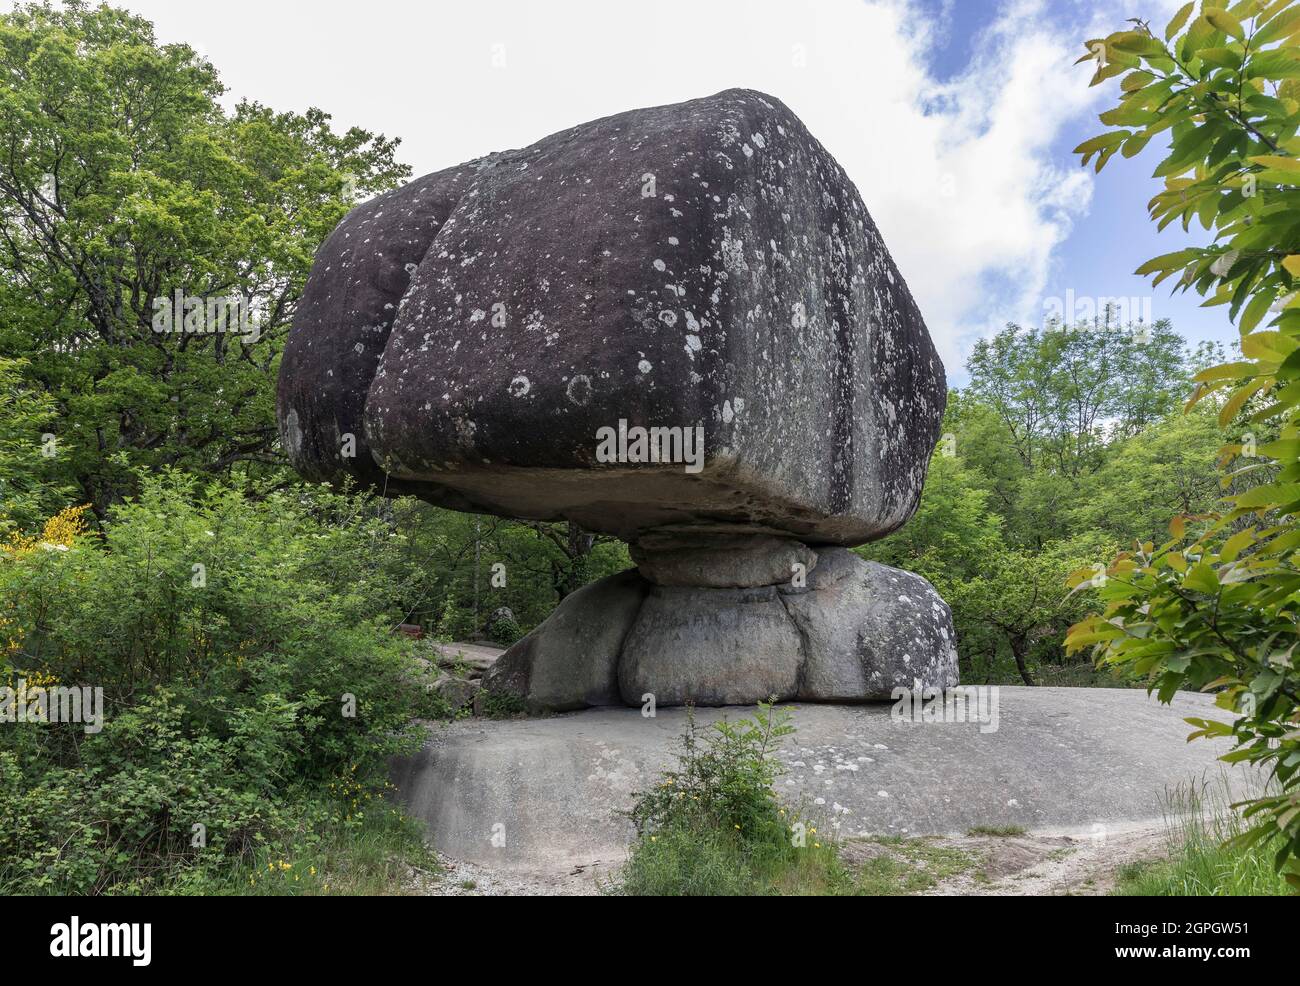 Frankreich, Tarn, Lacrouzette, Sidobre, Haut Languedoc regionaler Naturpark : Peyro Clabado, Granitblock mit einem Gewicht von 780 Tonnen auf einem Sockel Stockfoto